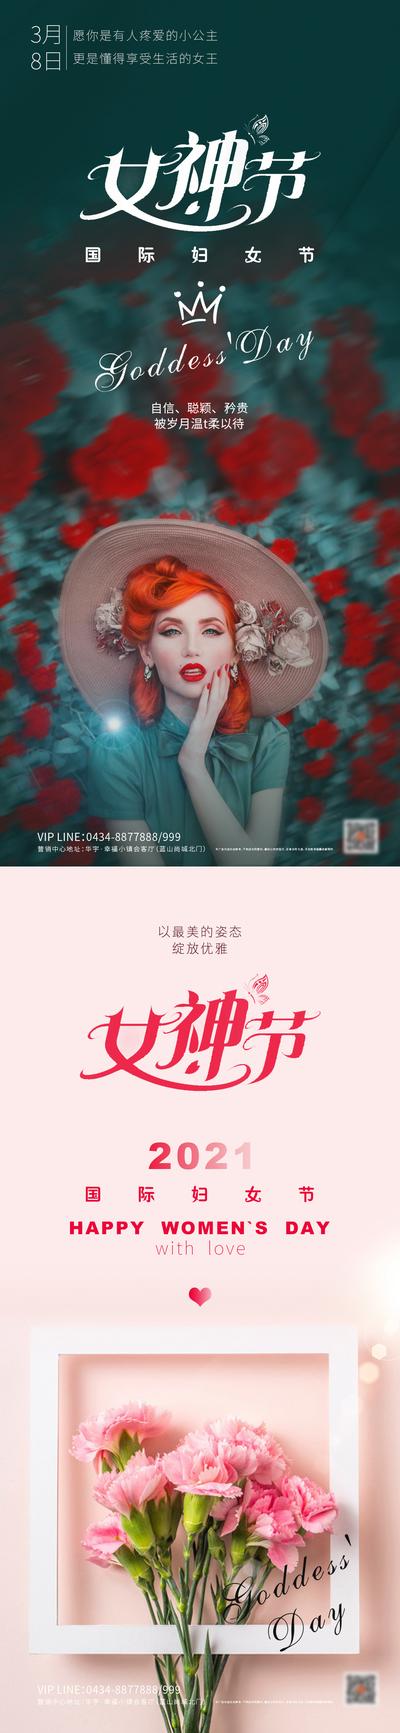 南门网 海报 房地产 公历节日 妇女节 系列 美女 康乃馨